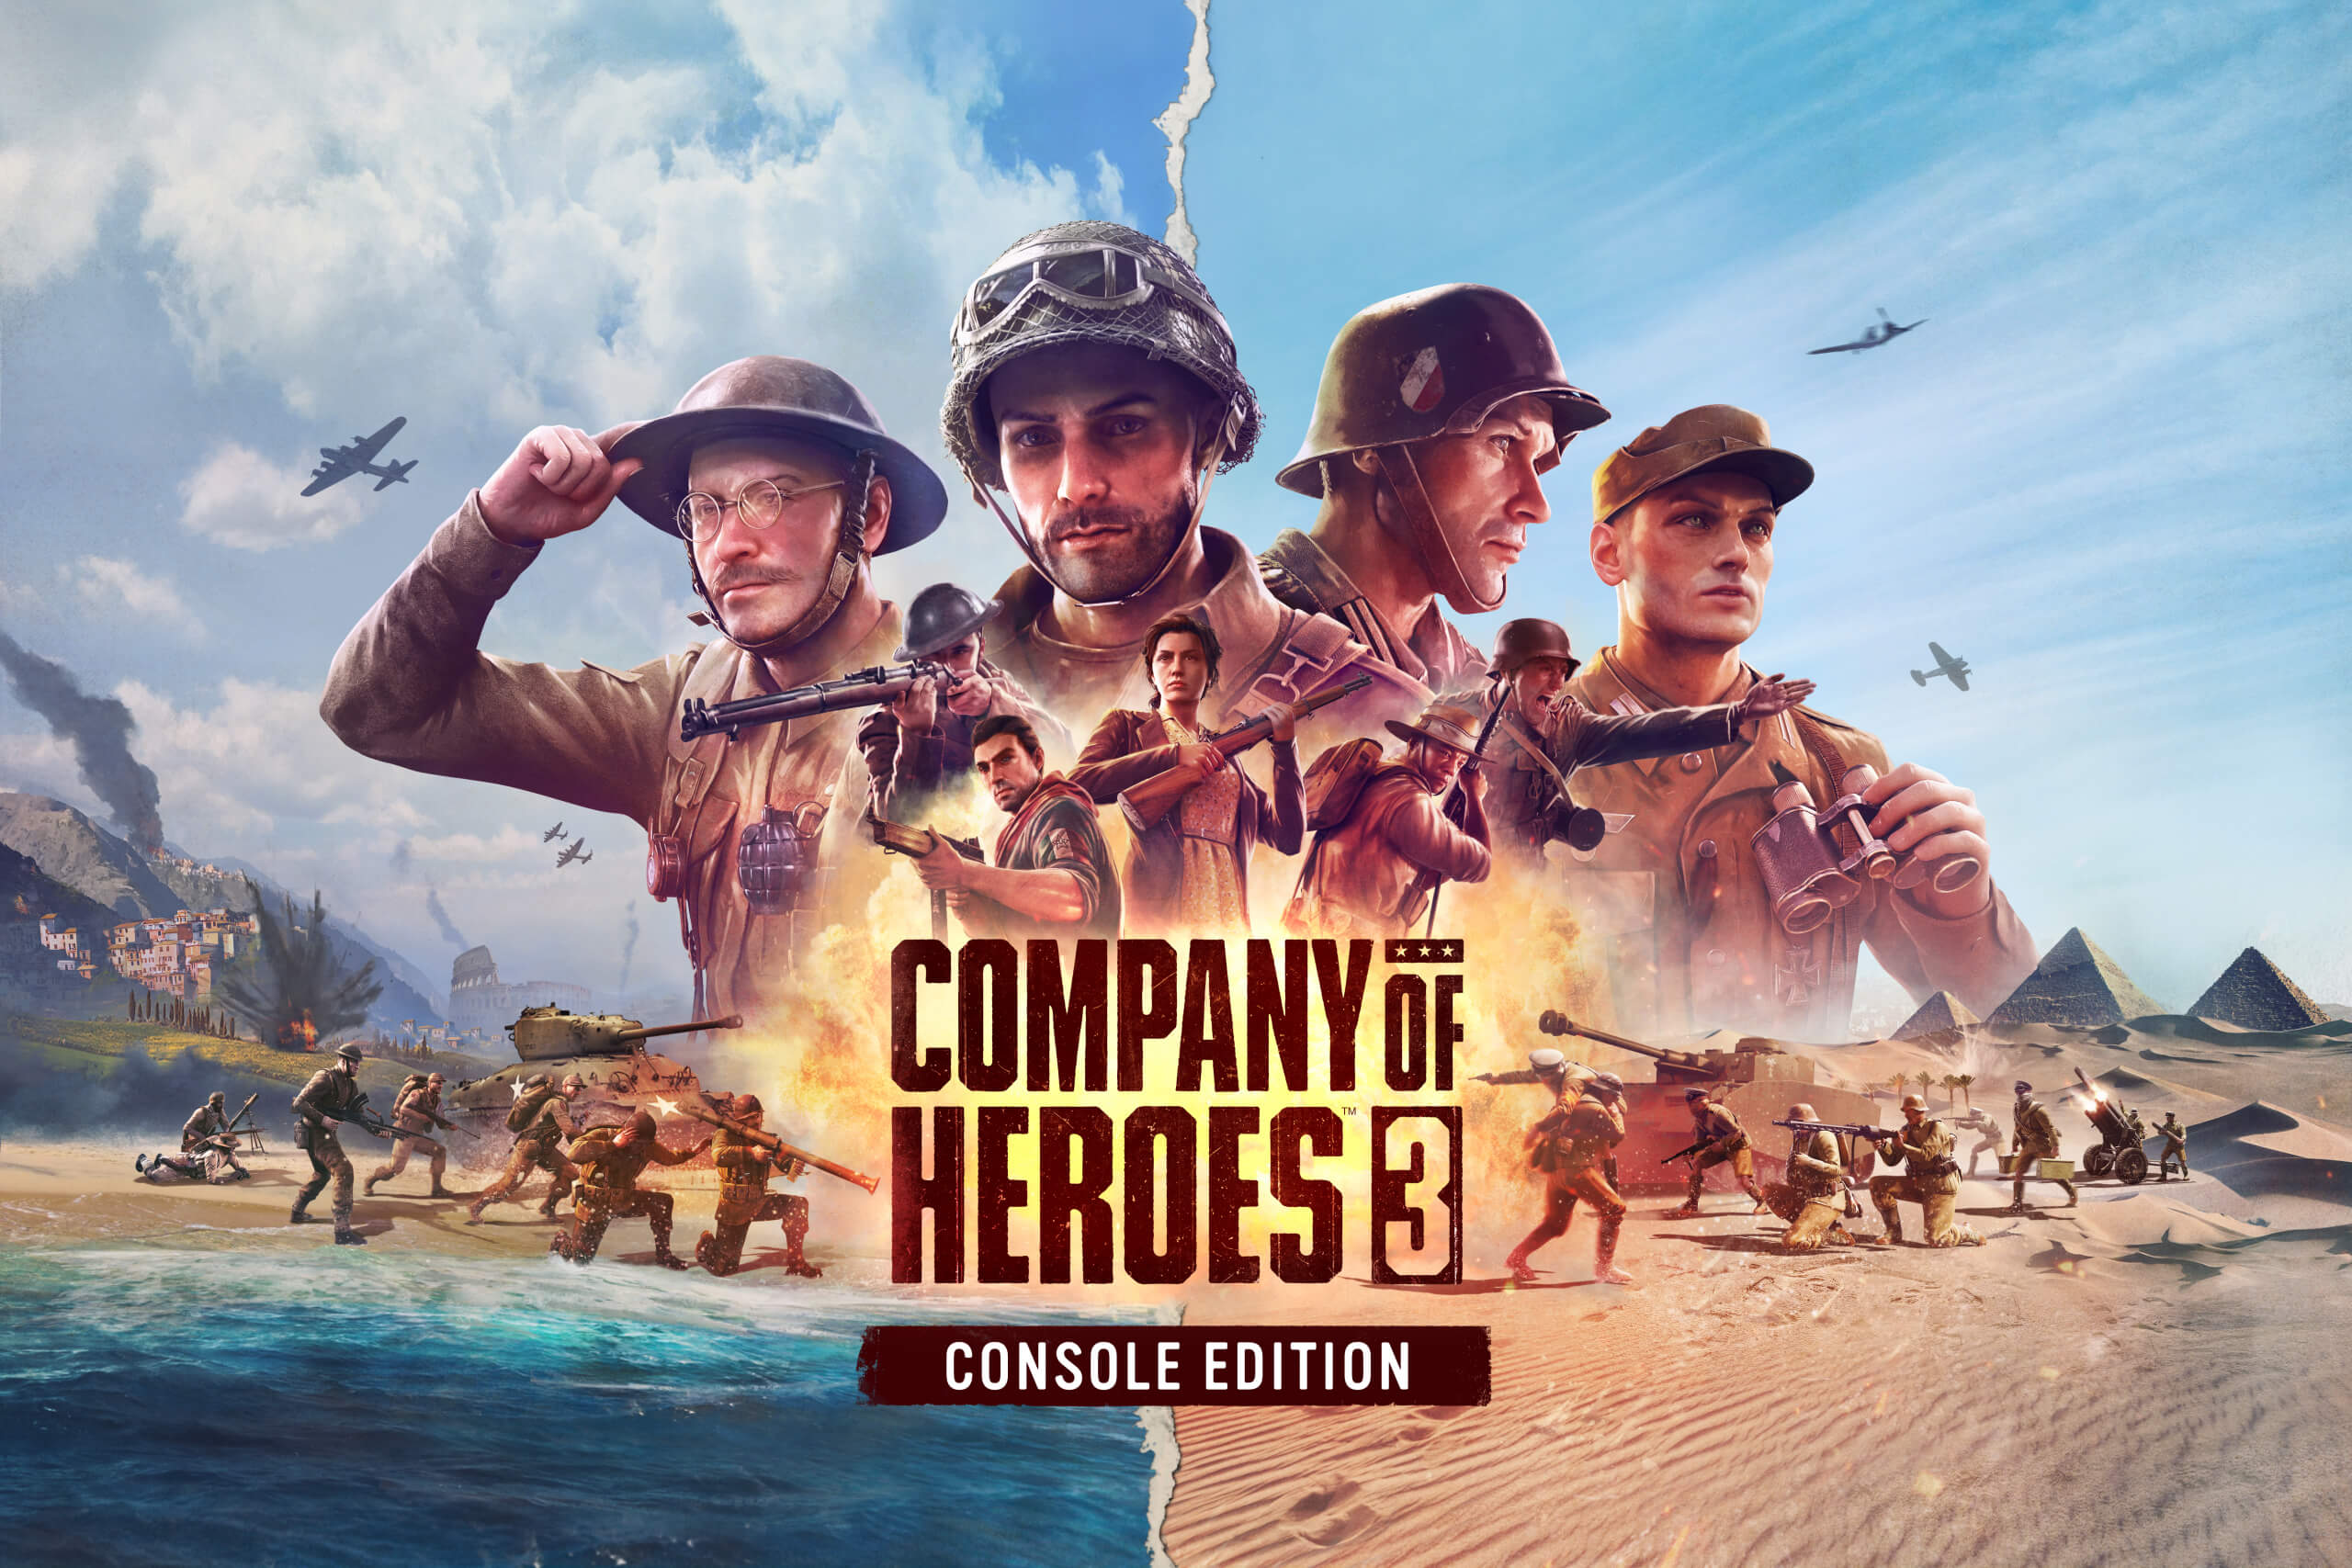  Company of Heroes 3 è in arrivo su console il 30 maggio